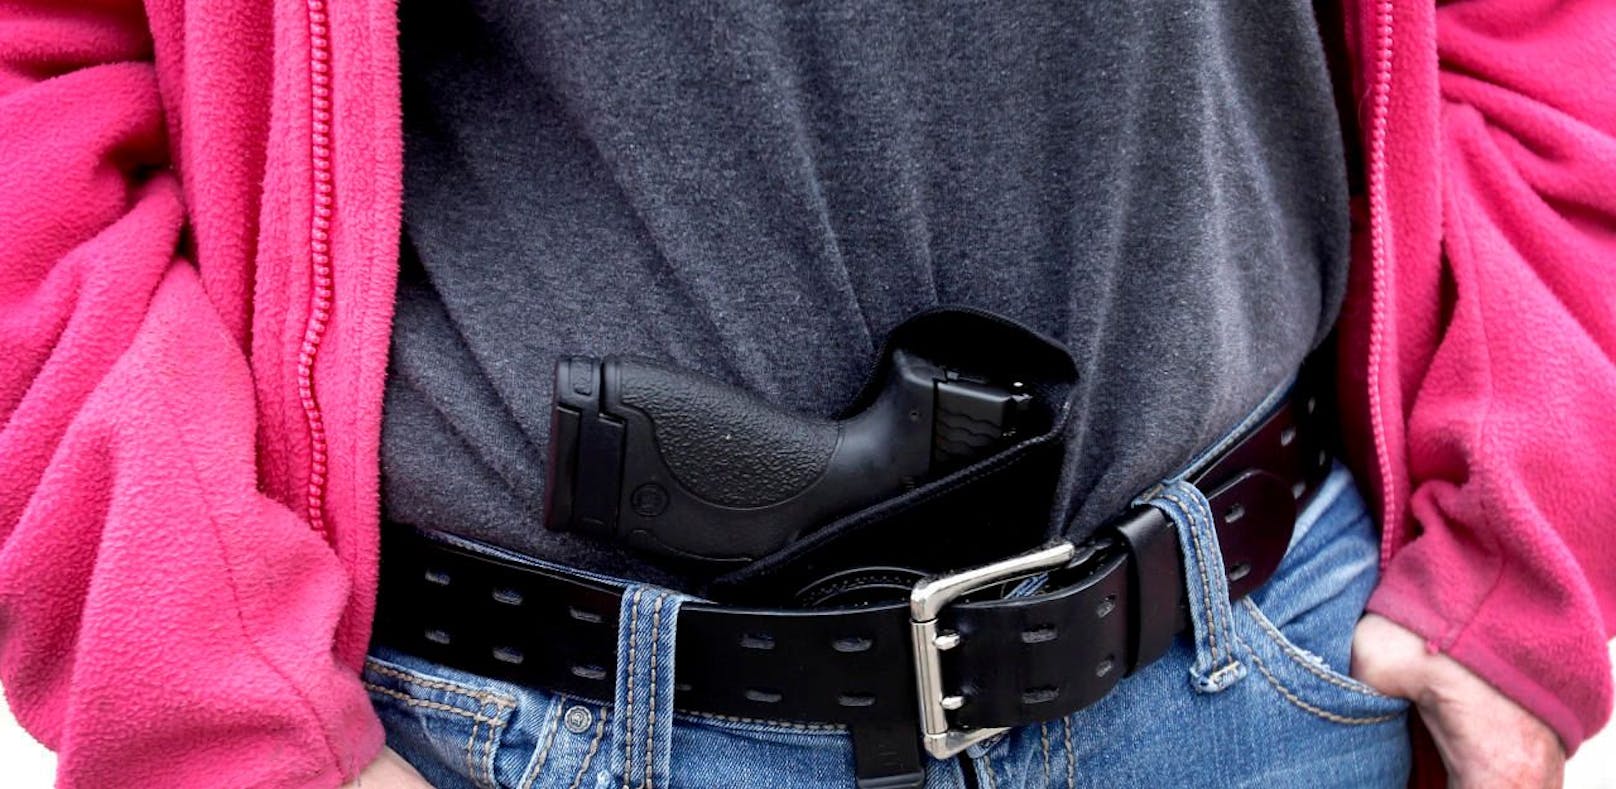 (Symbolbild) Der US-Amerikaner trug eine illegale Pistole im Hosenbund bei sich, als sich ein Schuss löste.